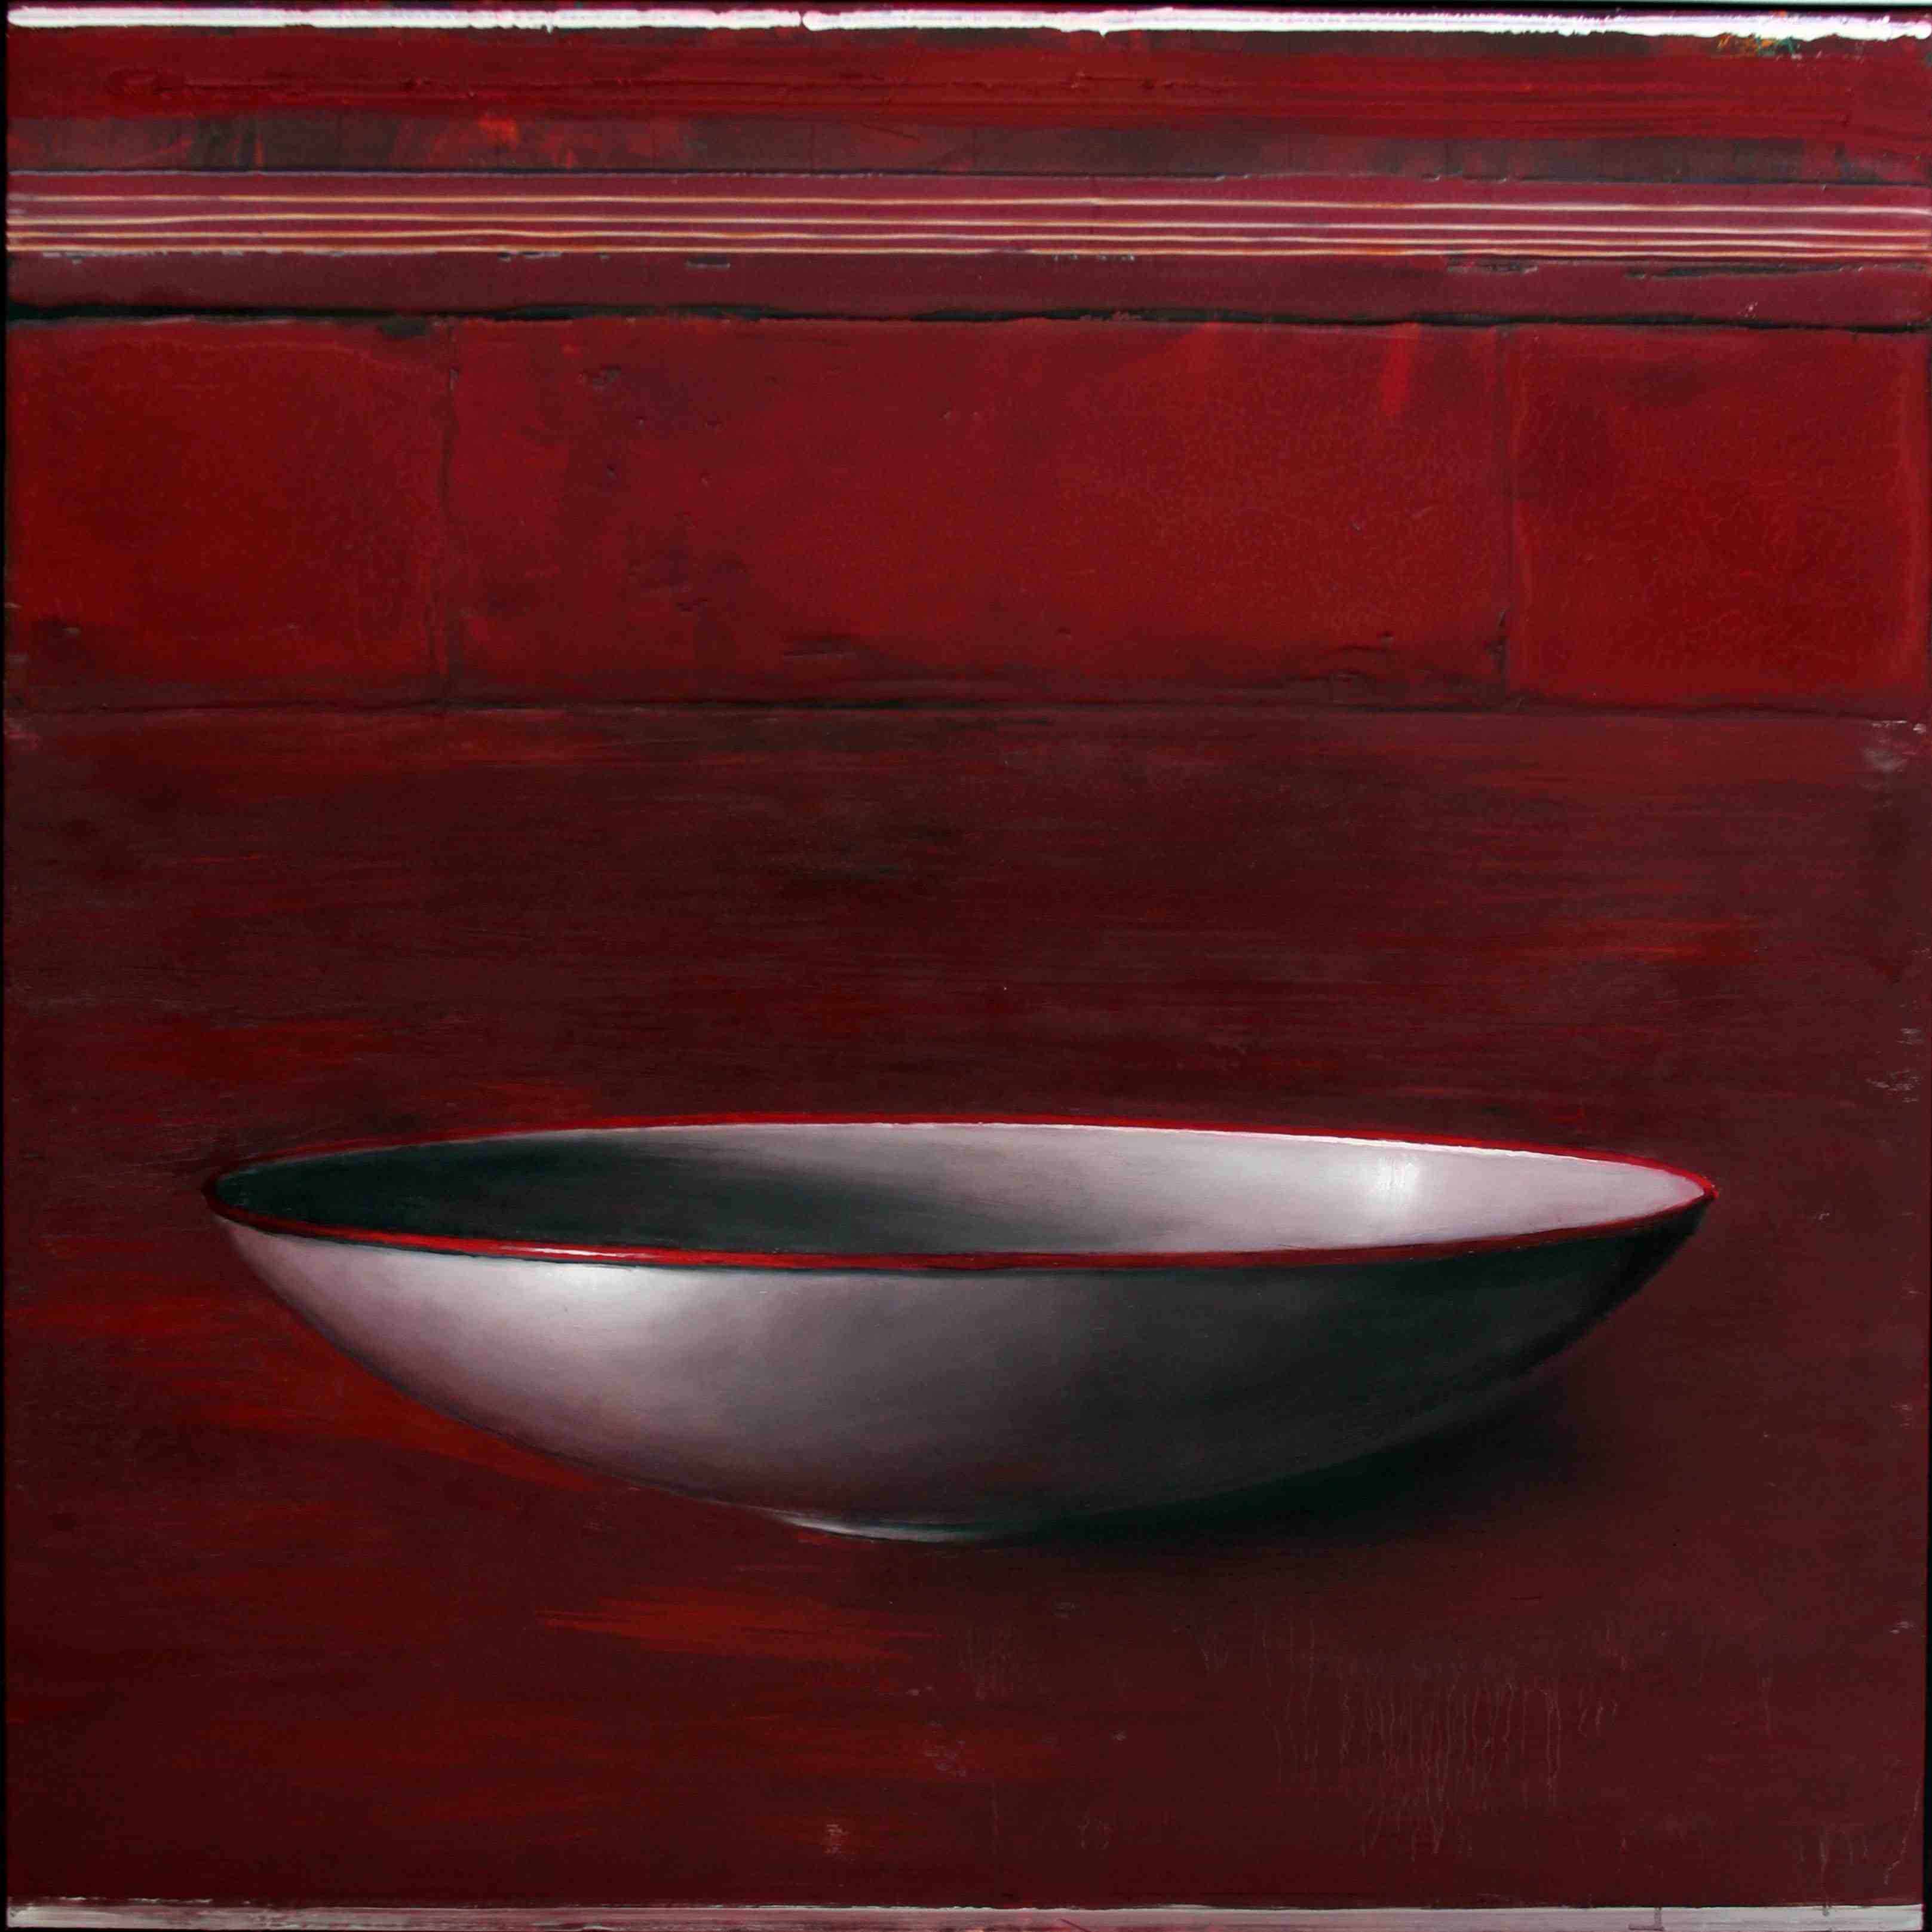 Schale auf Rot Mischtechnik auf Holz 122 x 122 cm 2013 © Michael Lauterjung